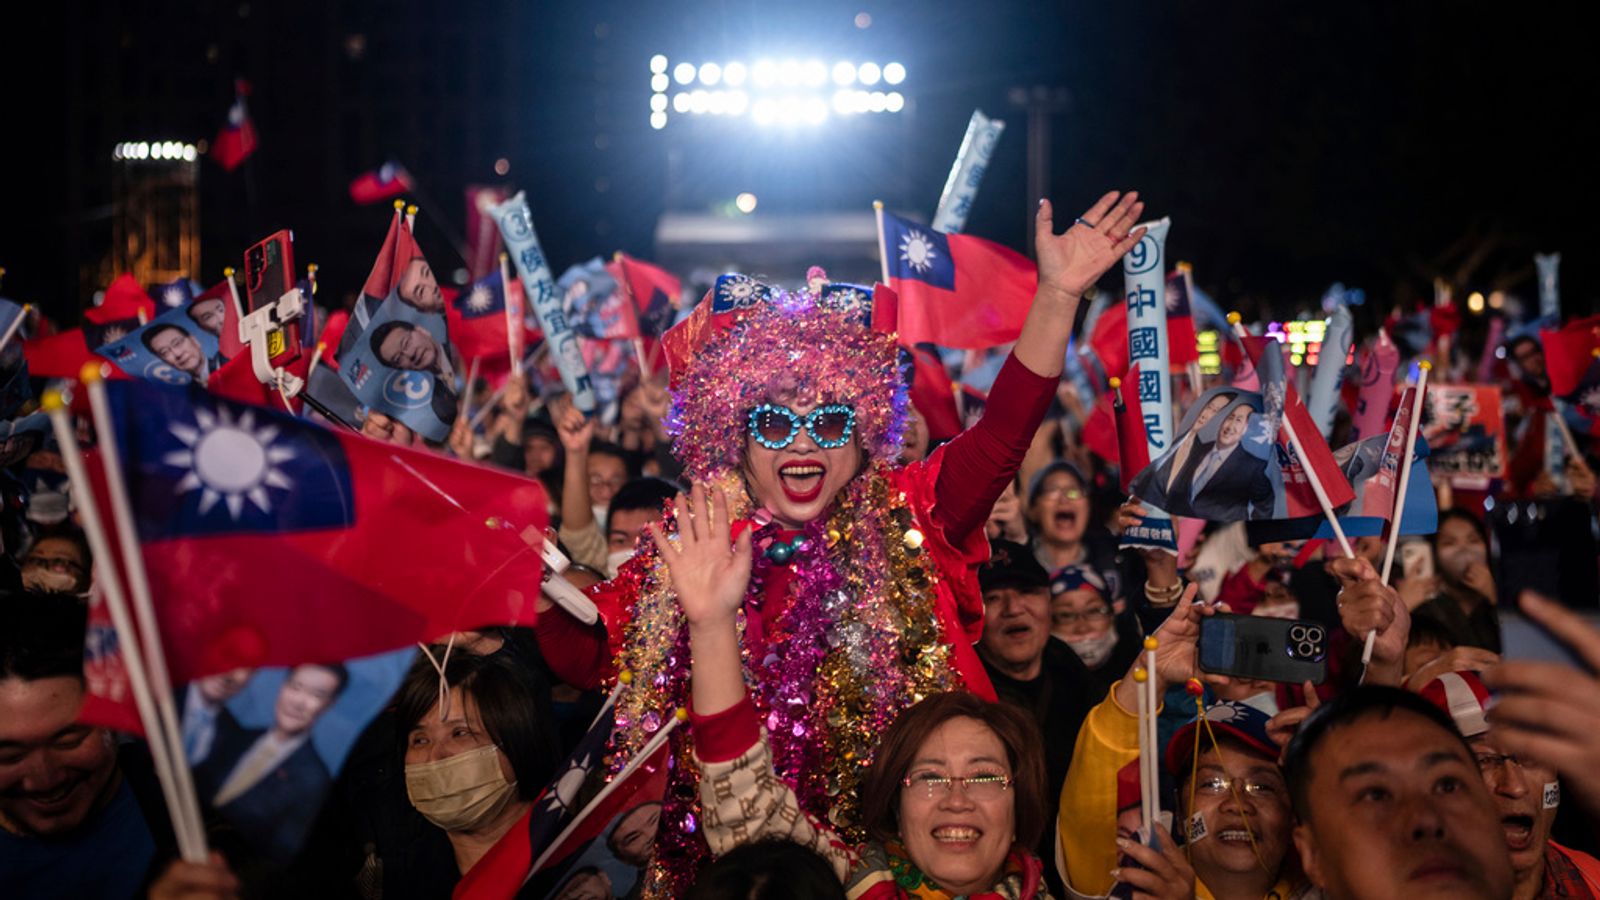 Taïwan se prépare à un vote qui pourrait ébranler le monde  nouvelles du monde